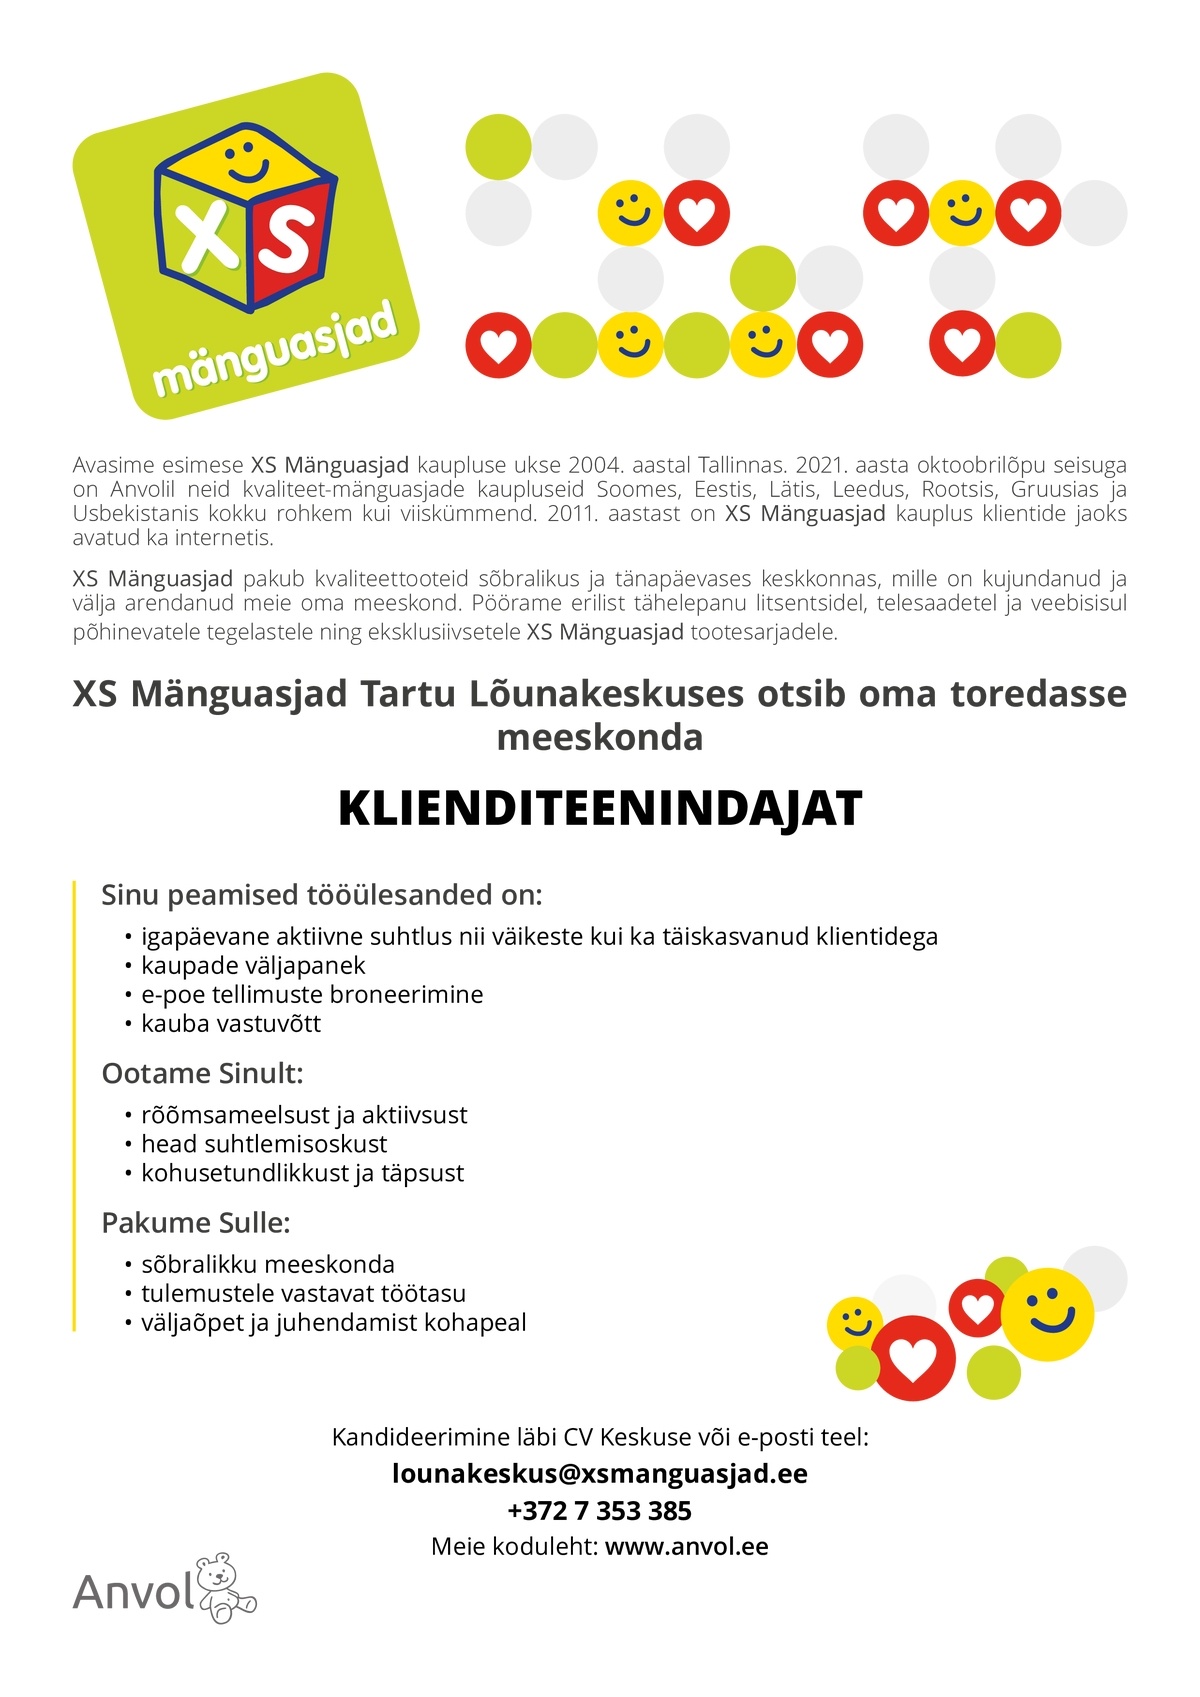 Anvol OÜ Tartu Lõunakeskuse XS Mänguasjade klienditeenindaja